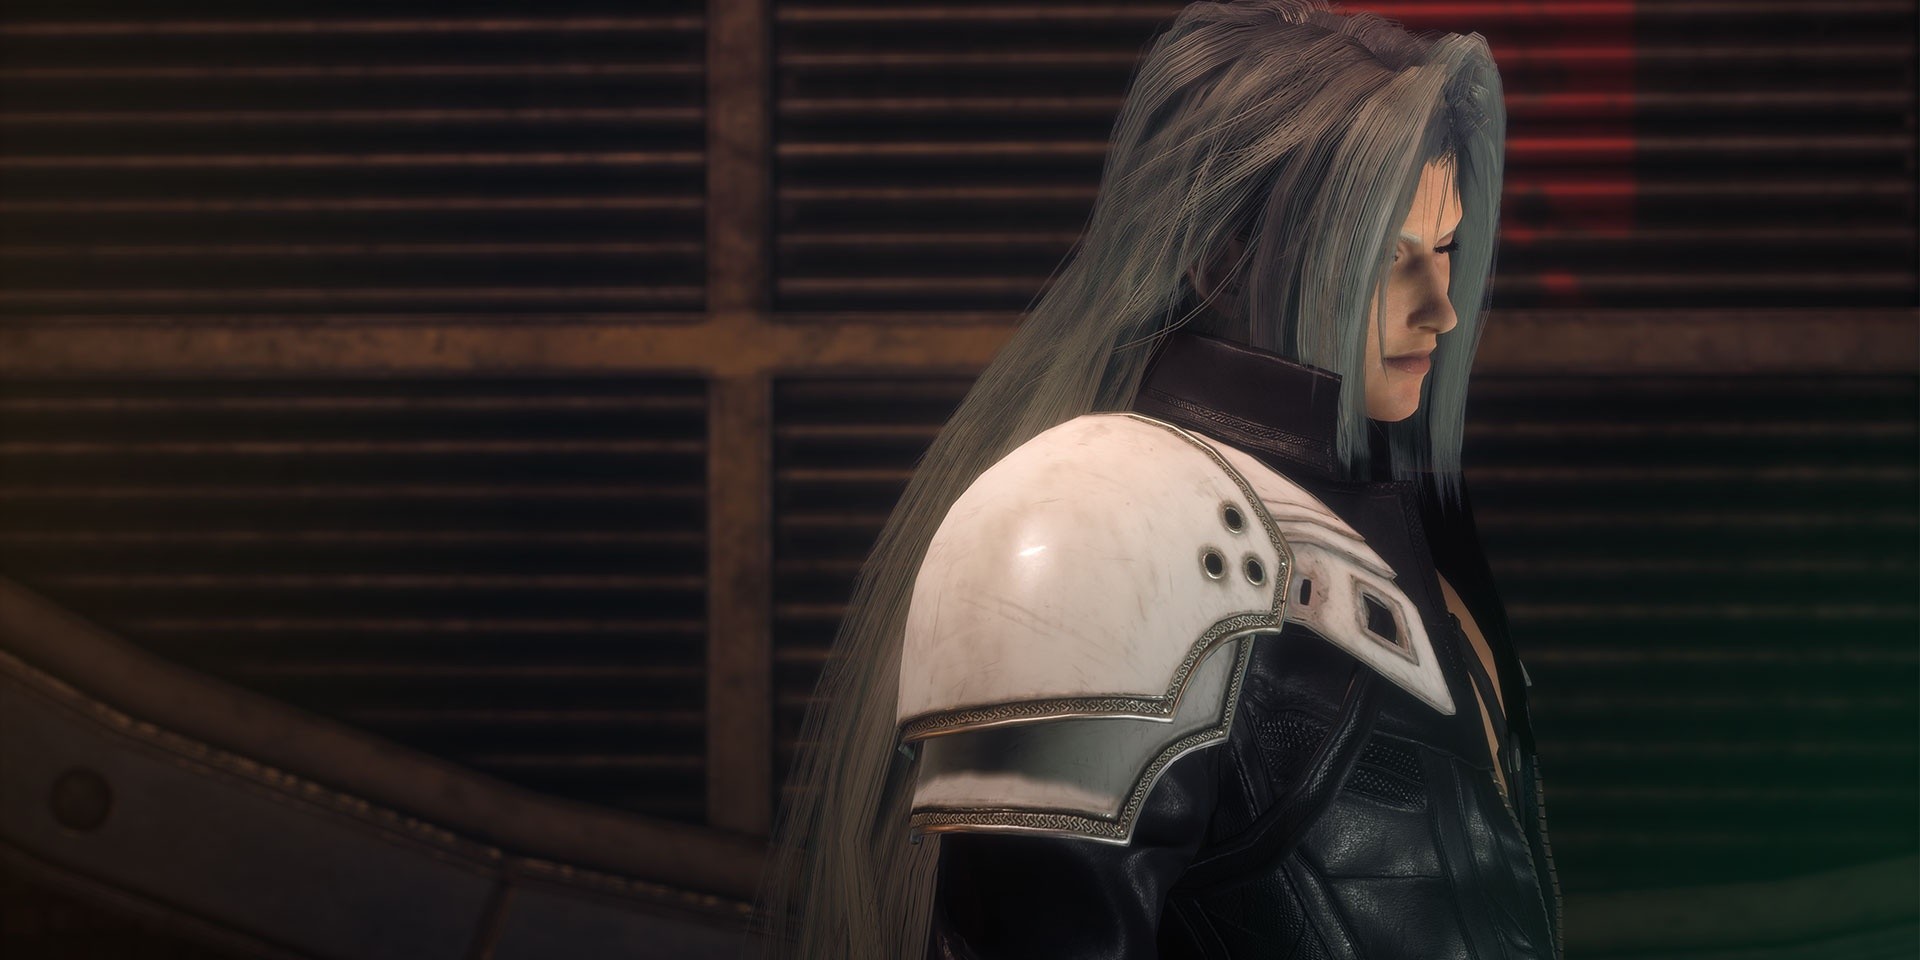 Square Enix announces Final Fantasy VII Remake sequel 'REBIRTH